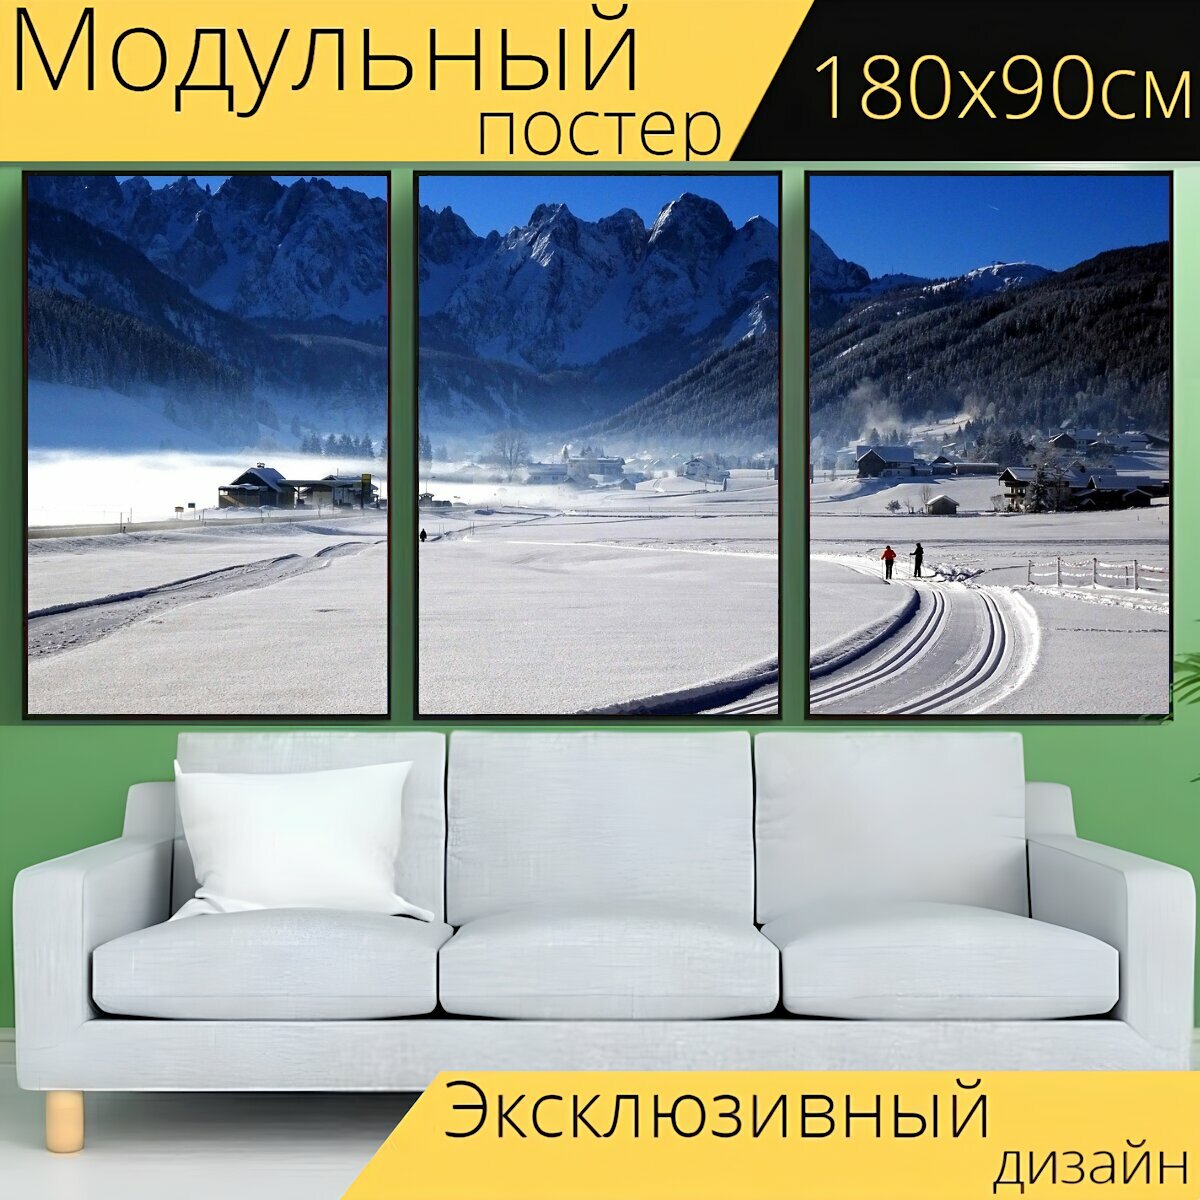 Модульный постер "Зимний пейзаж, снег, лыжные гонки" 180 x 90 см. для интерьера